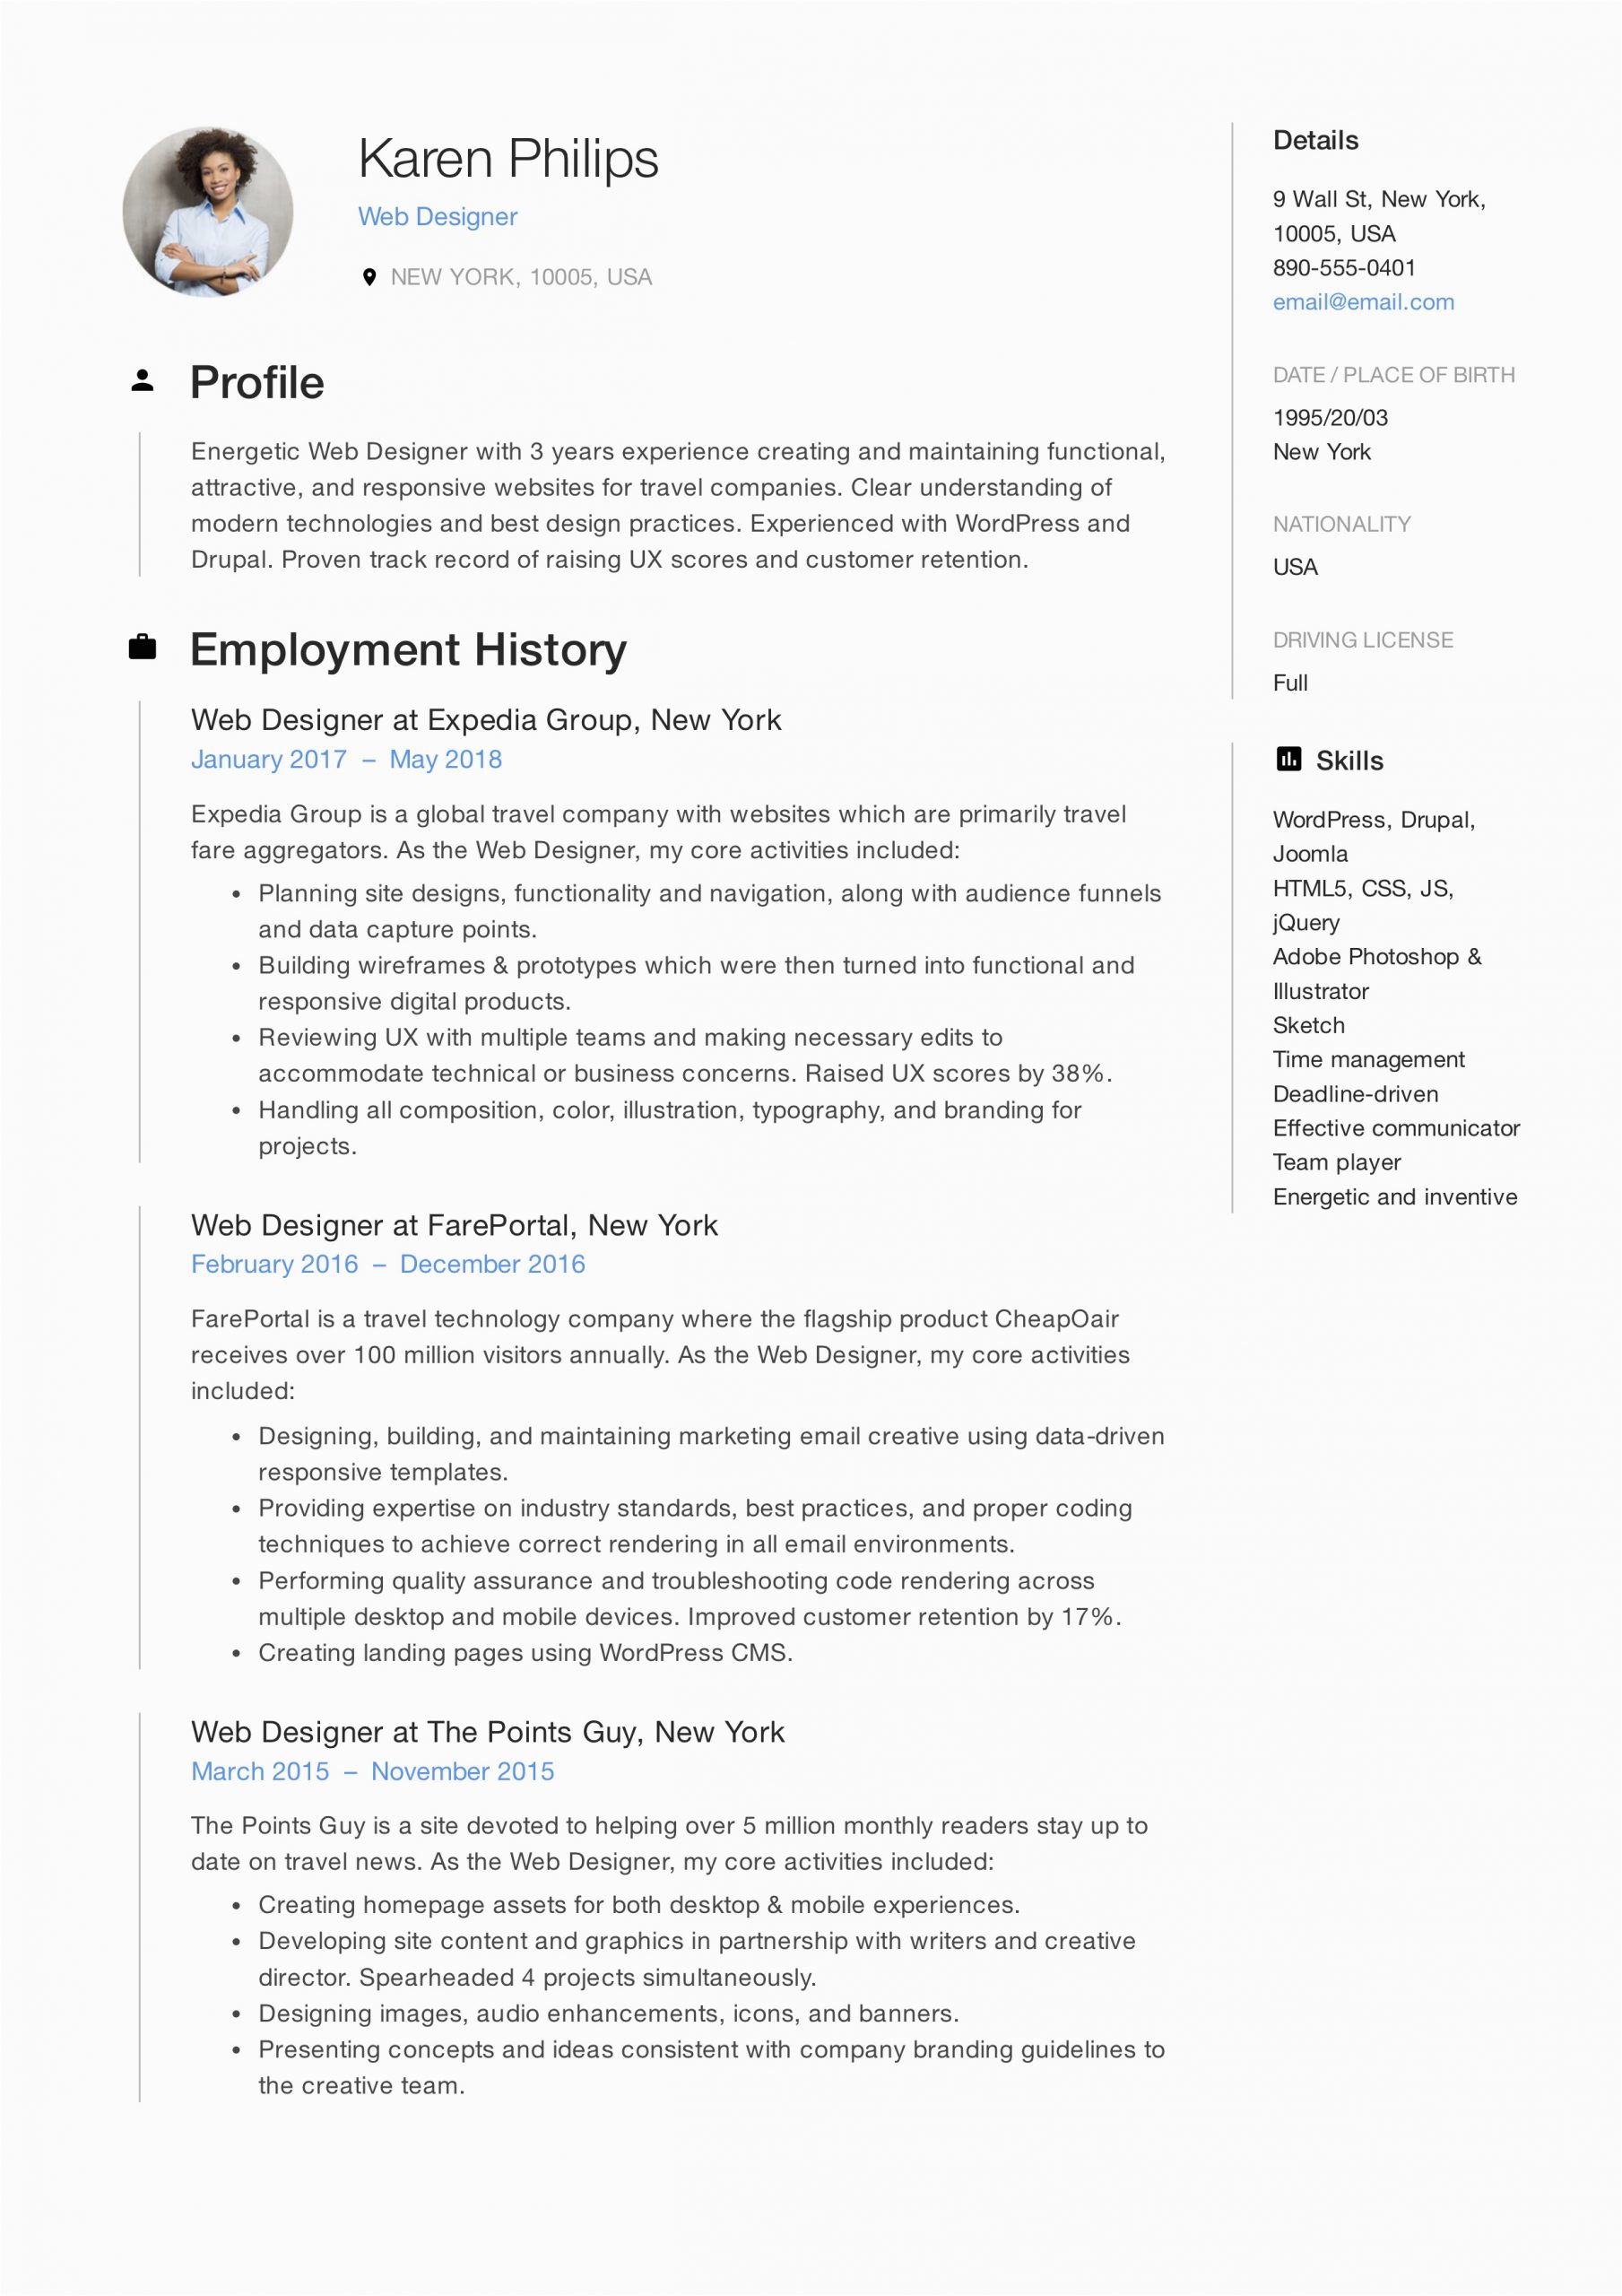 Sample Resume for asp Net Developer Fresher Resume for Web Developer Fresher Web Developer Resume Sample